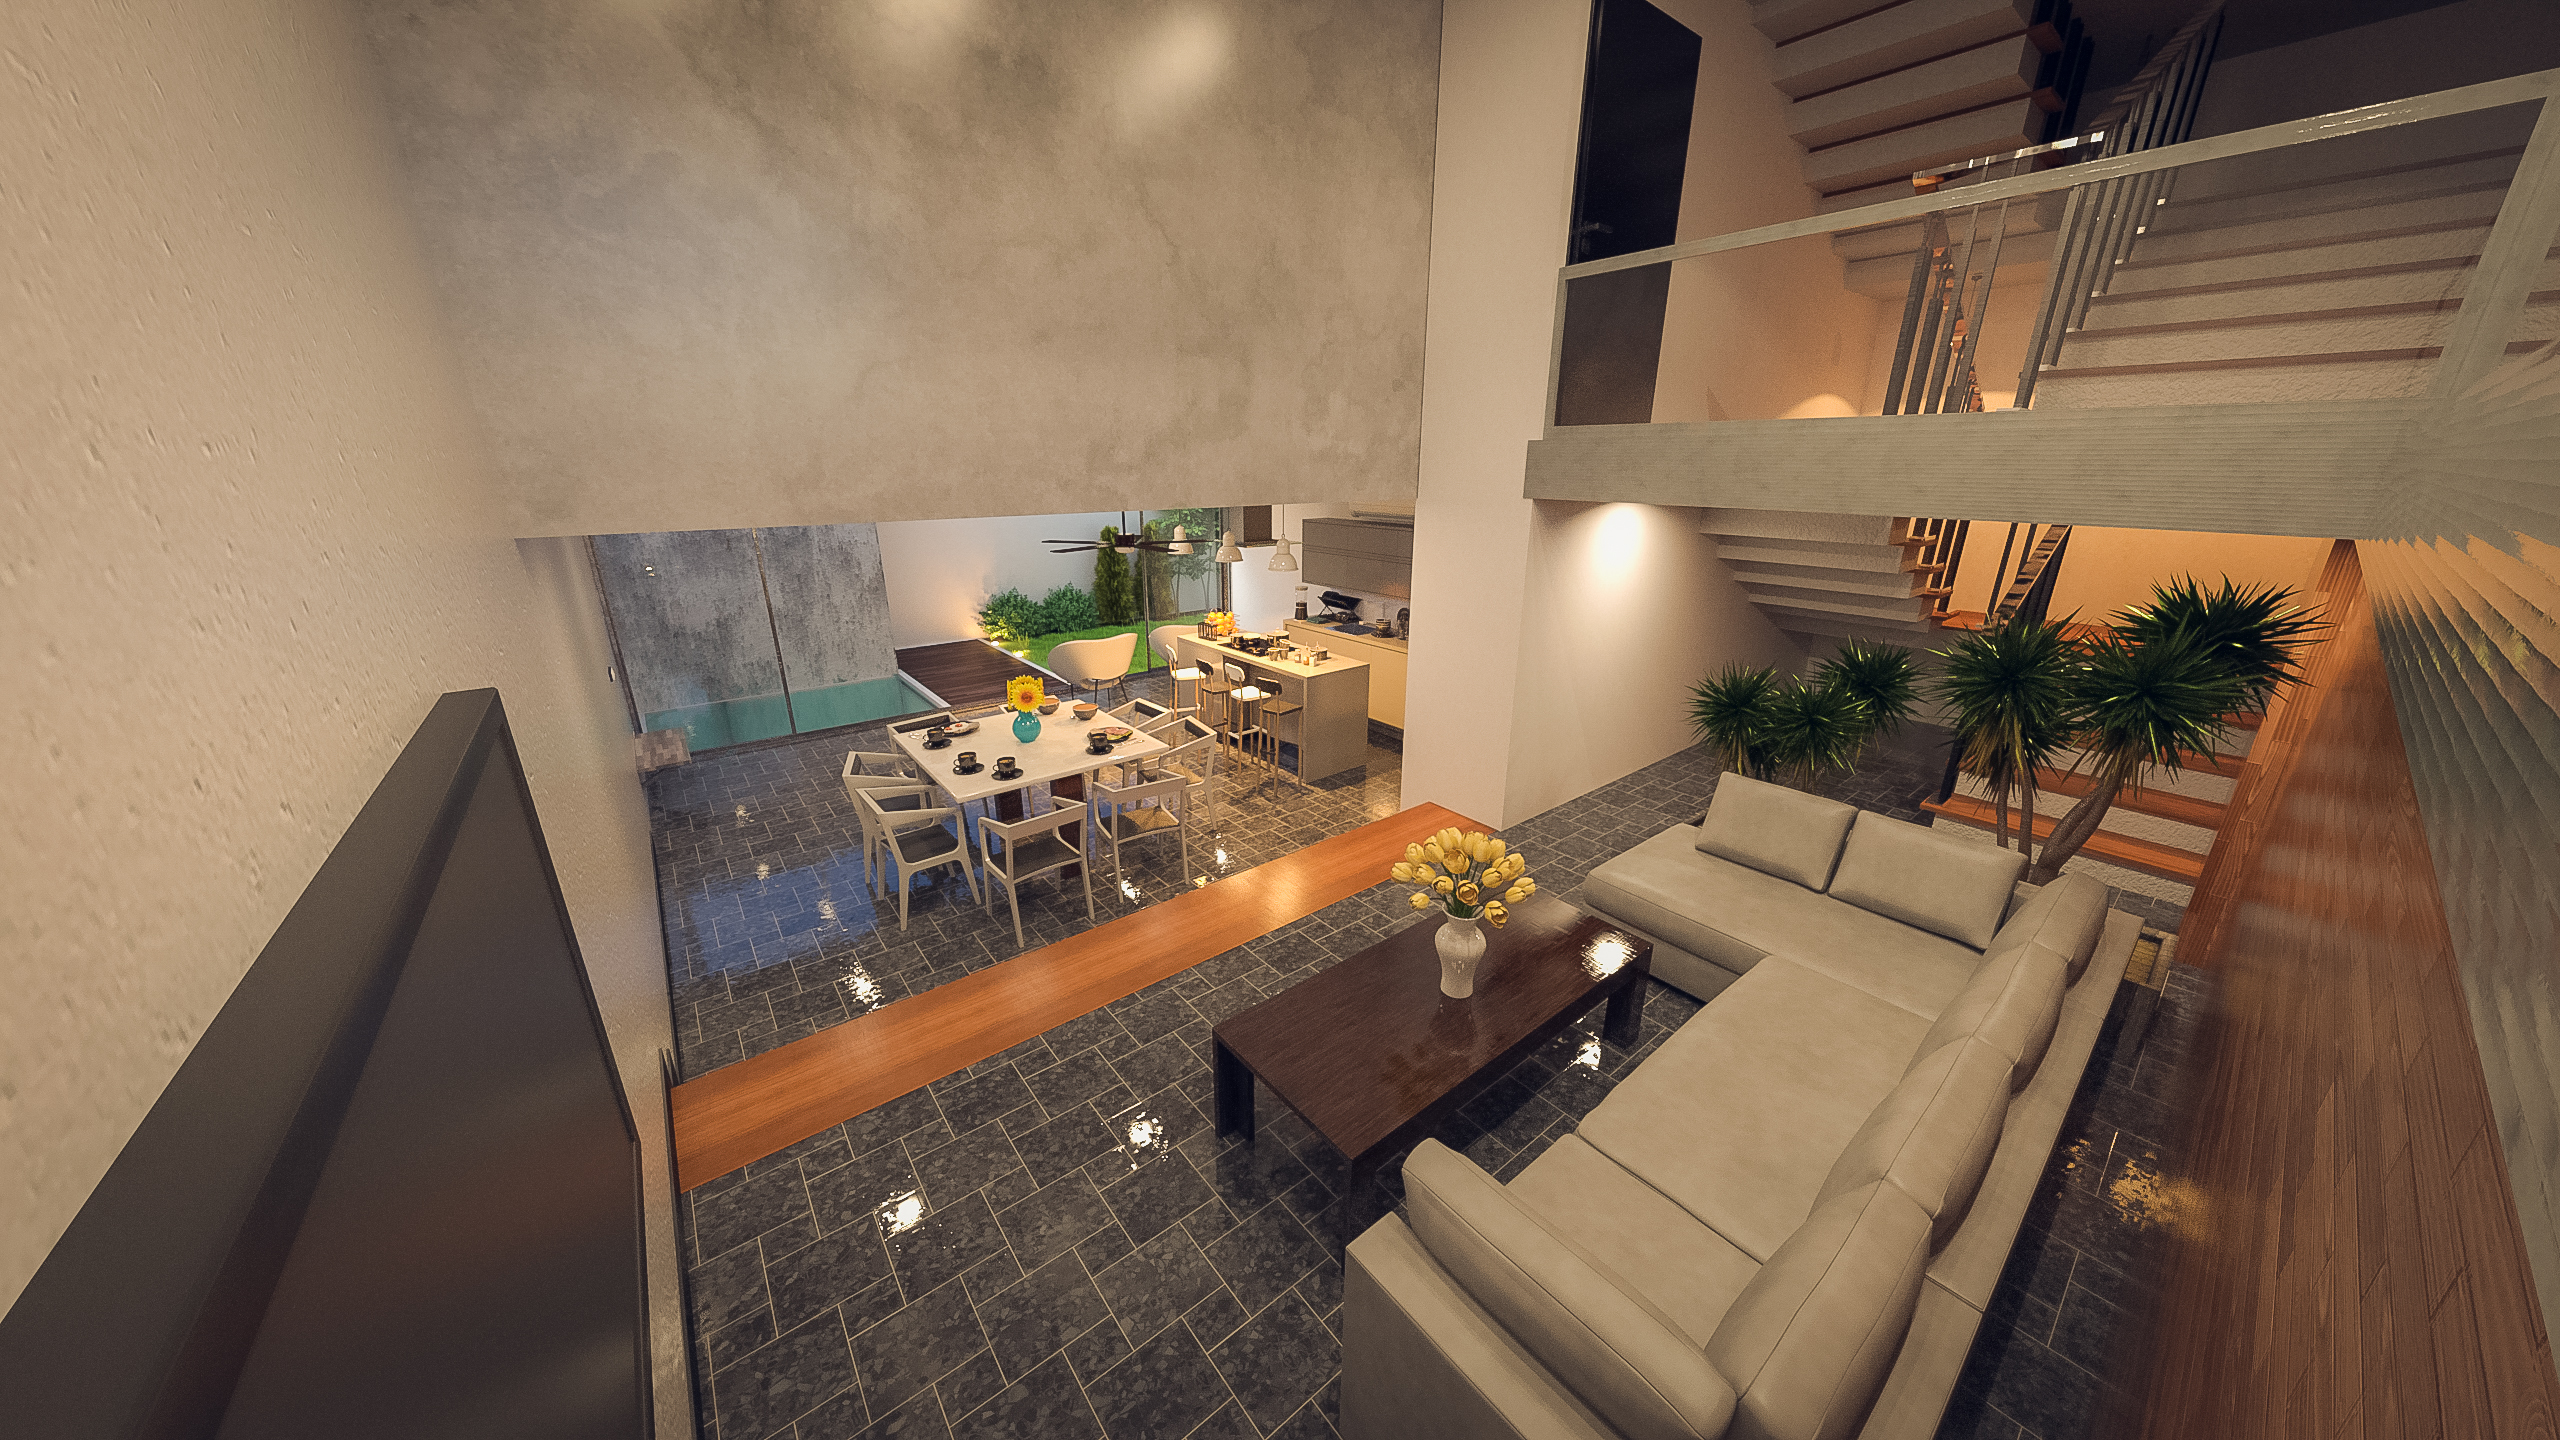 Sleek Modern Home by: bituka3d, 3D Models by Daz 3D